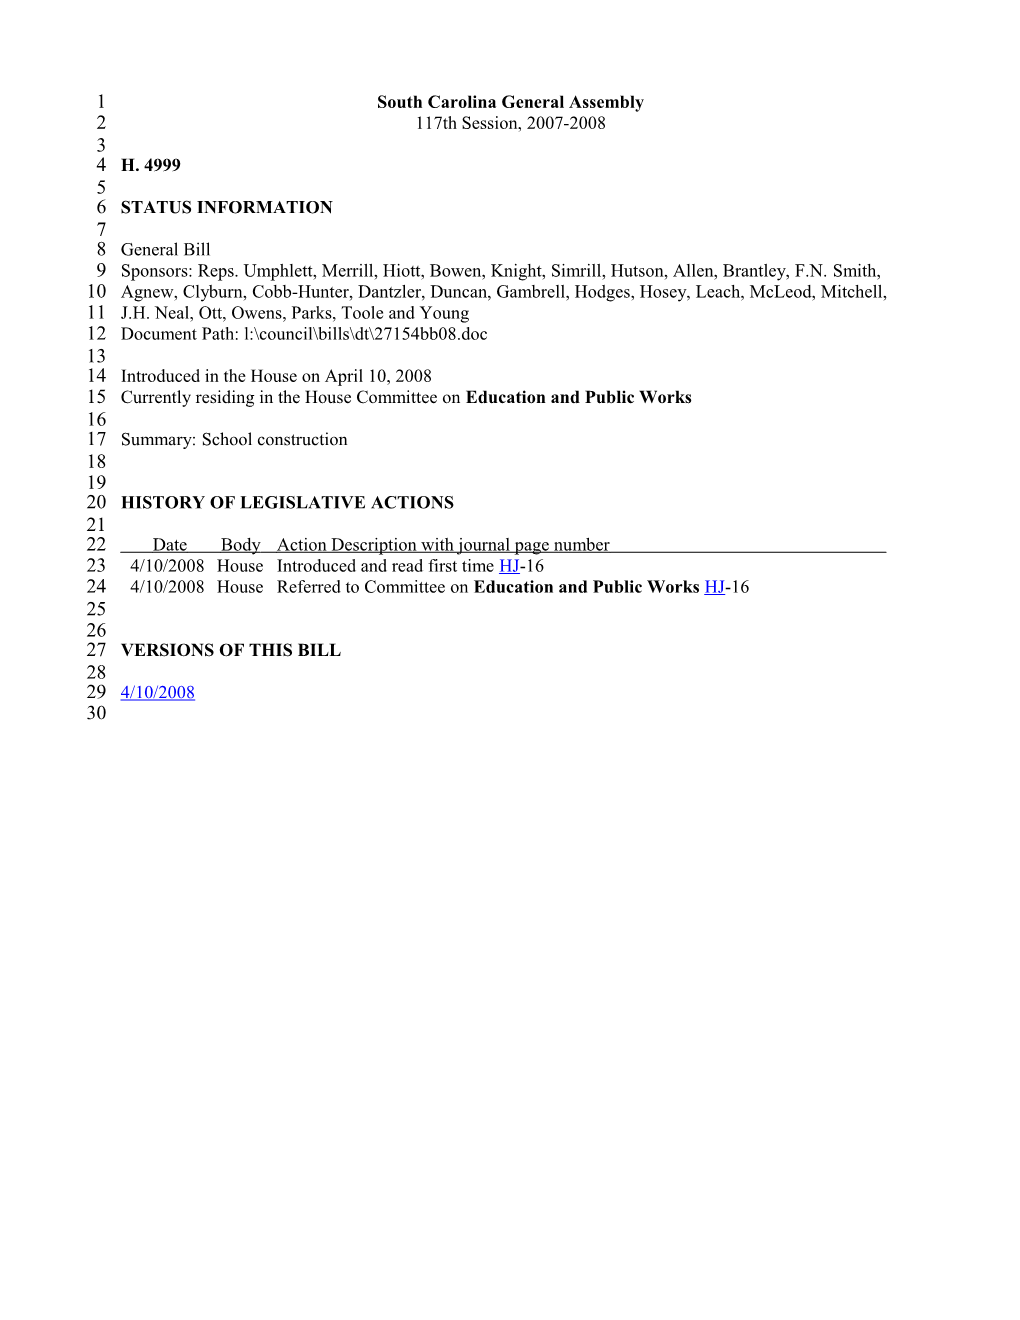 2007-2008 Bill 4999: School Construction - South Carolina Legislature Online